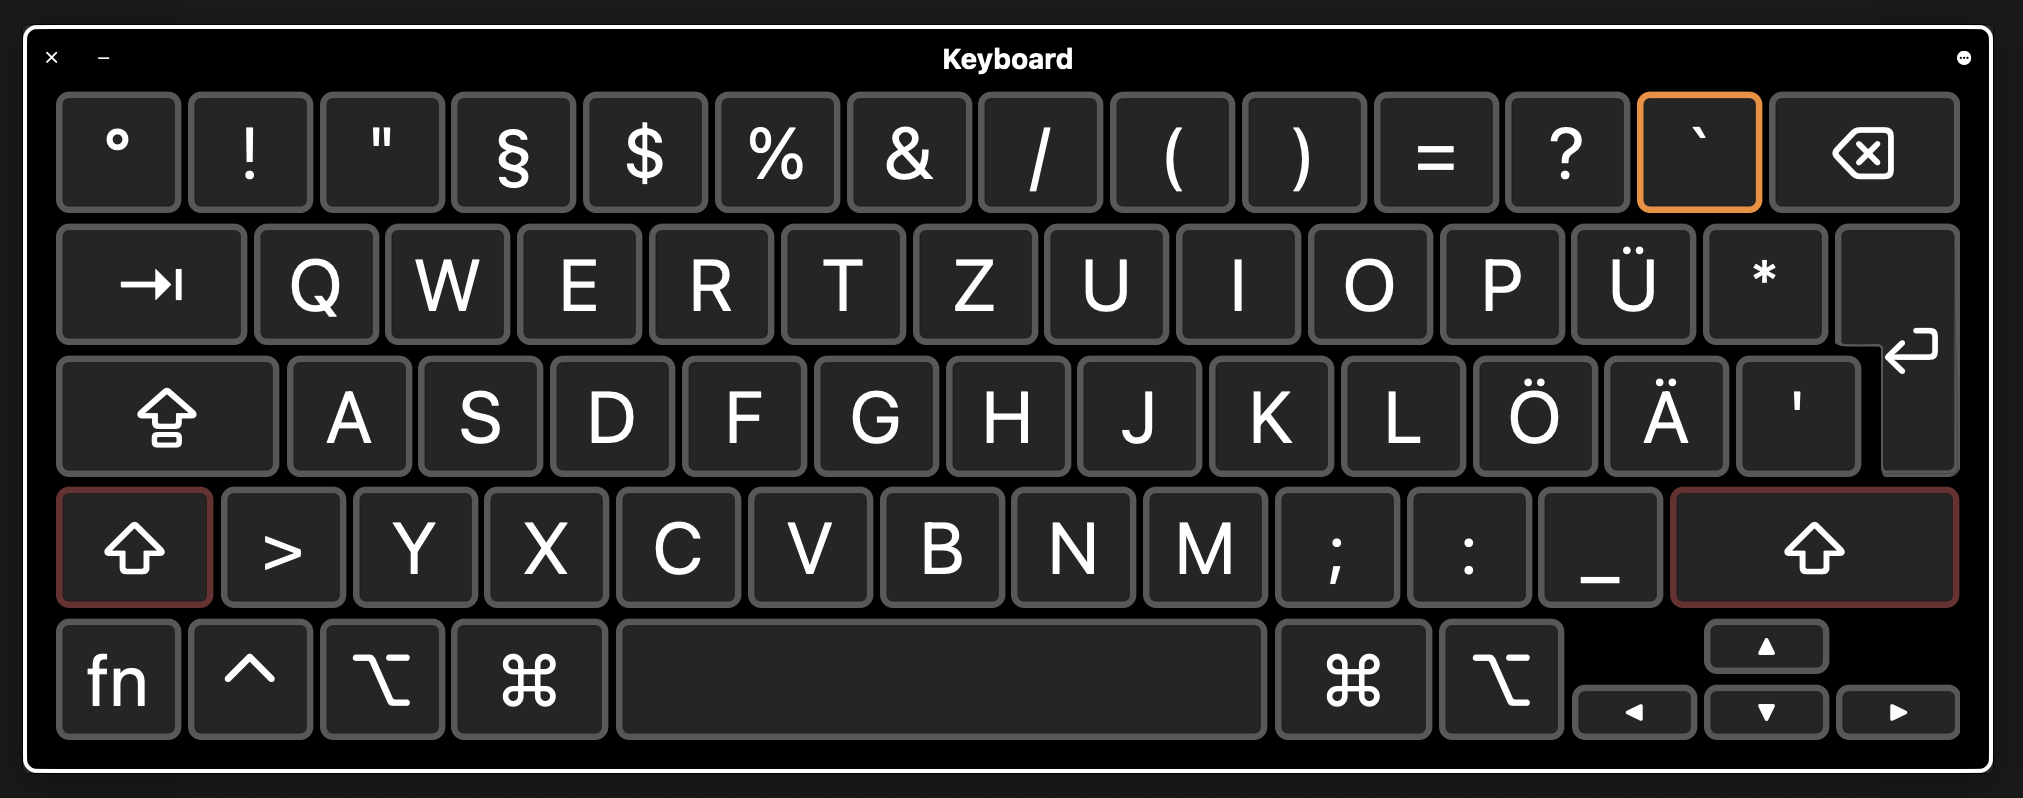 Шведская раскладка клавиатуры. Армянская раскладка клавиатуры. Украинская раскладка клавиатуры на ноутбуке. Раскладка клавиатуры на планшете